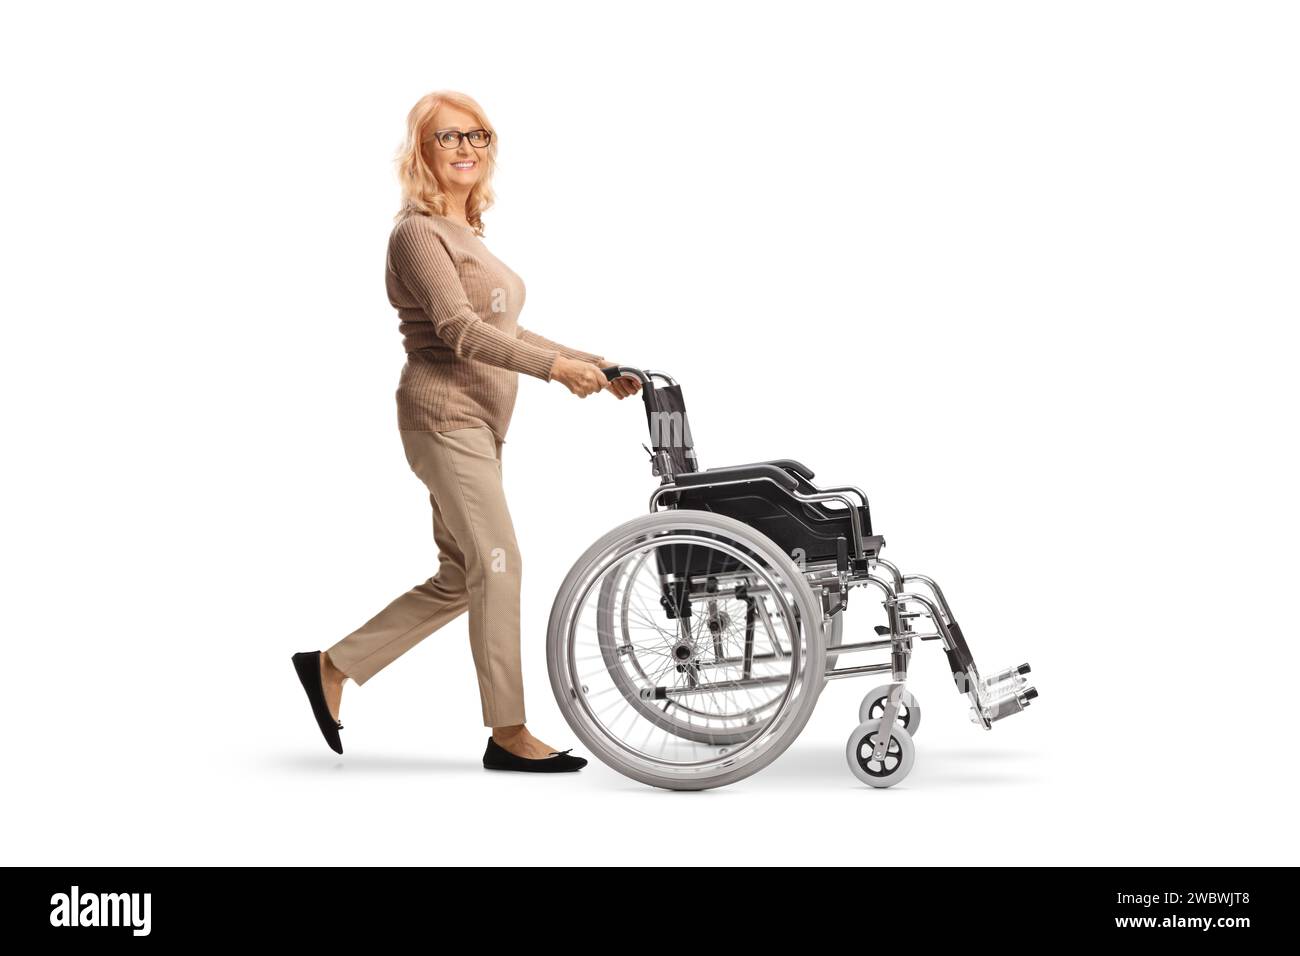 Femme d'âge moyen poussant un fauteuil roulant vide isolé sur fond blanc Banque D'Images